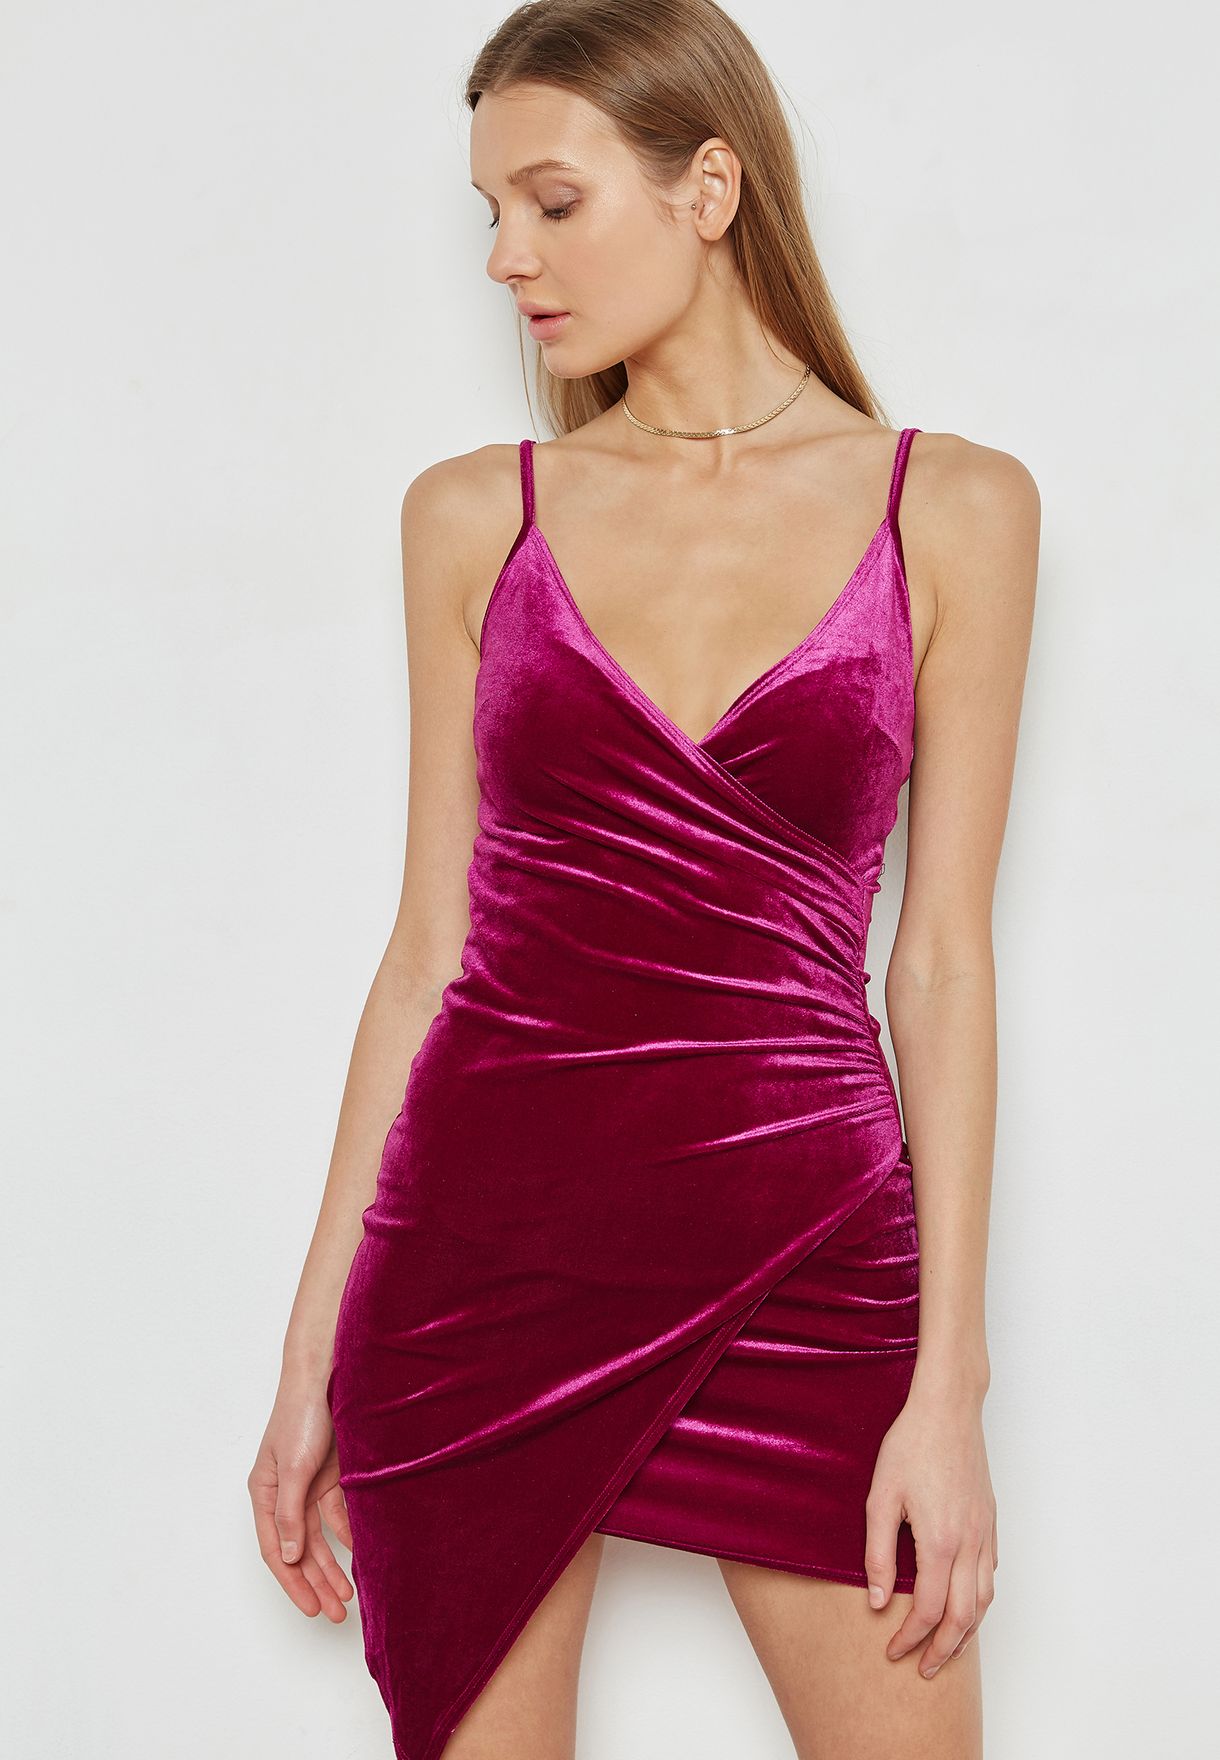 Buy > forever 21 pink velvet dress > in stock